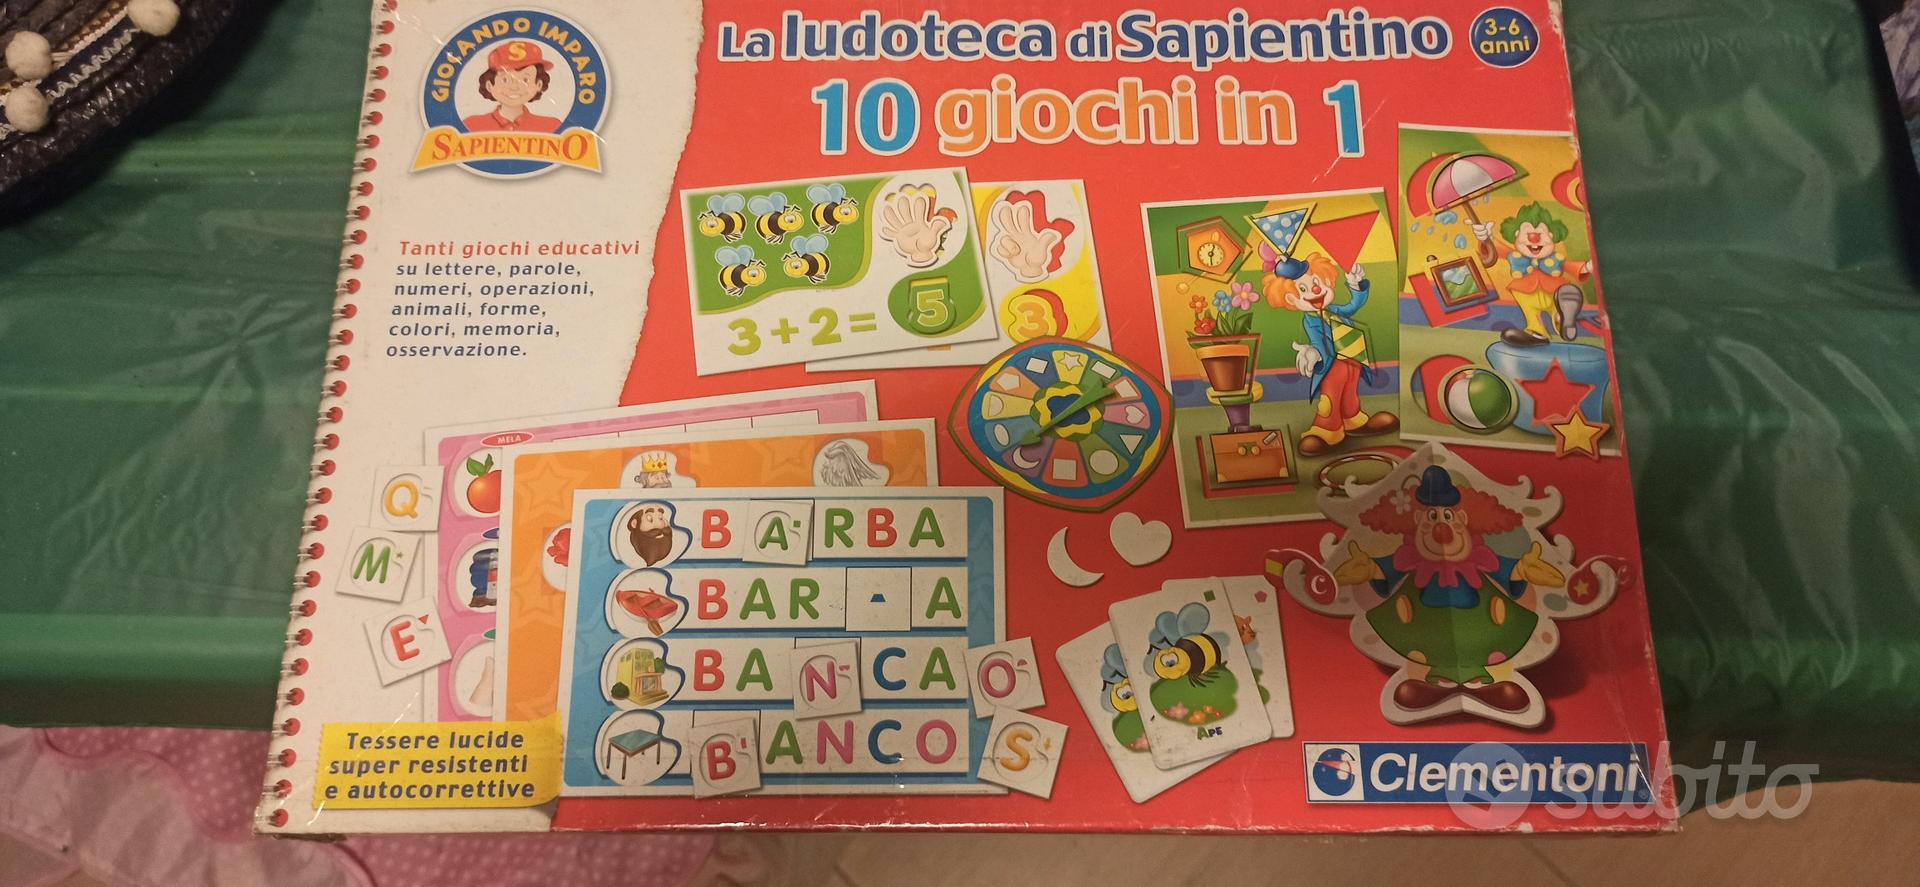 la ludoteca di sapientino - Tutto per i bambini In vendita a Bergamo